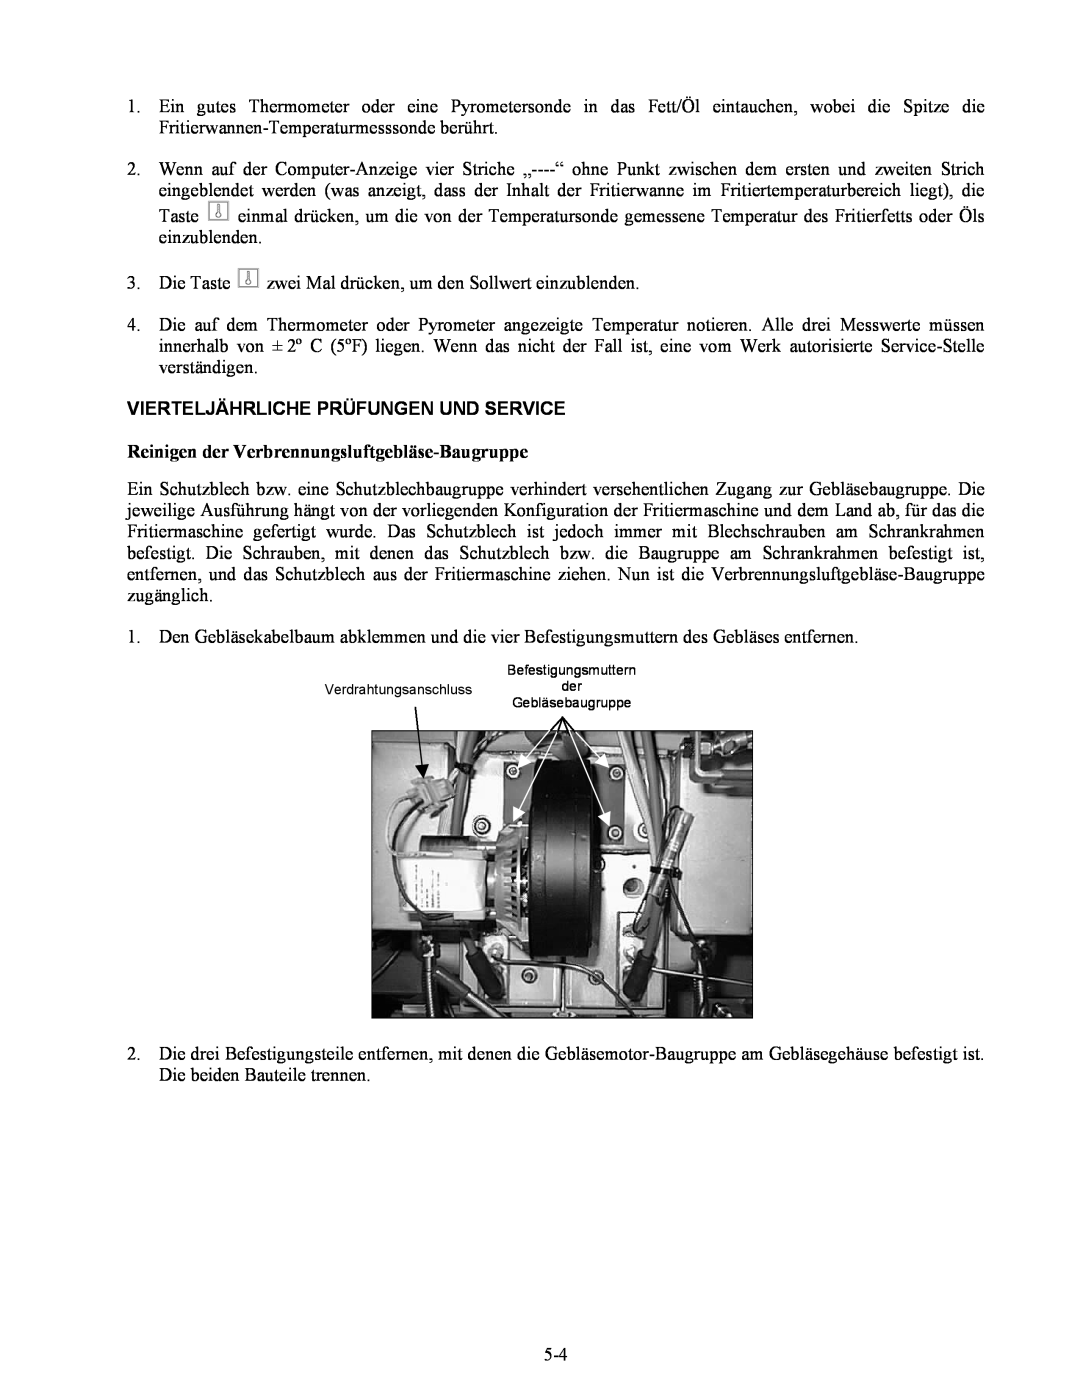 Frymaster Series H50 manual Vierteljährliche Prüfungen Und Service, Reinigen der Verbrennungsluftgebläse-Baugruppe 